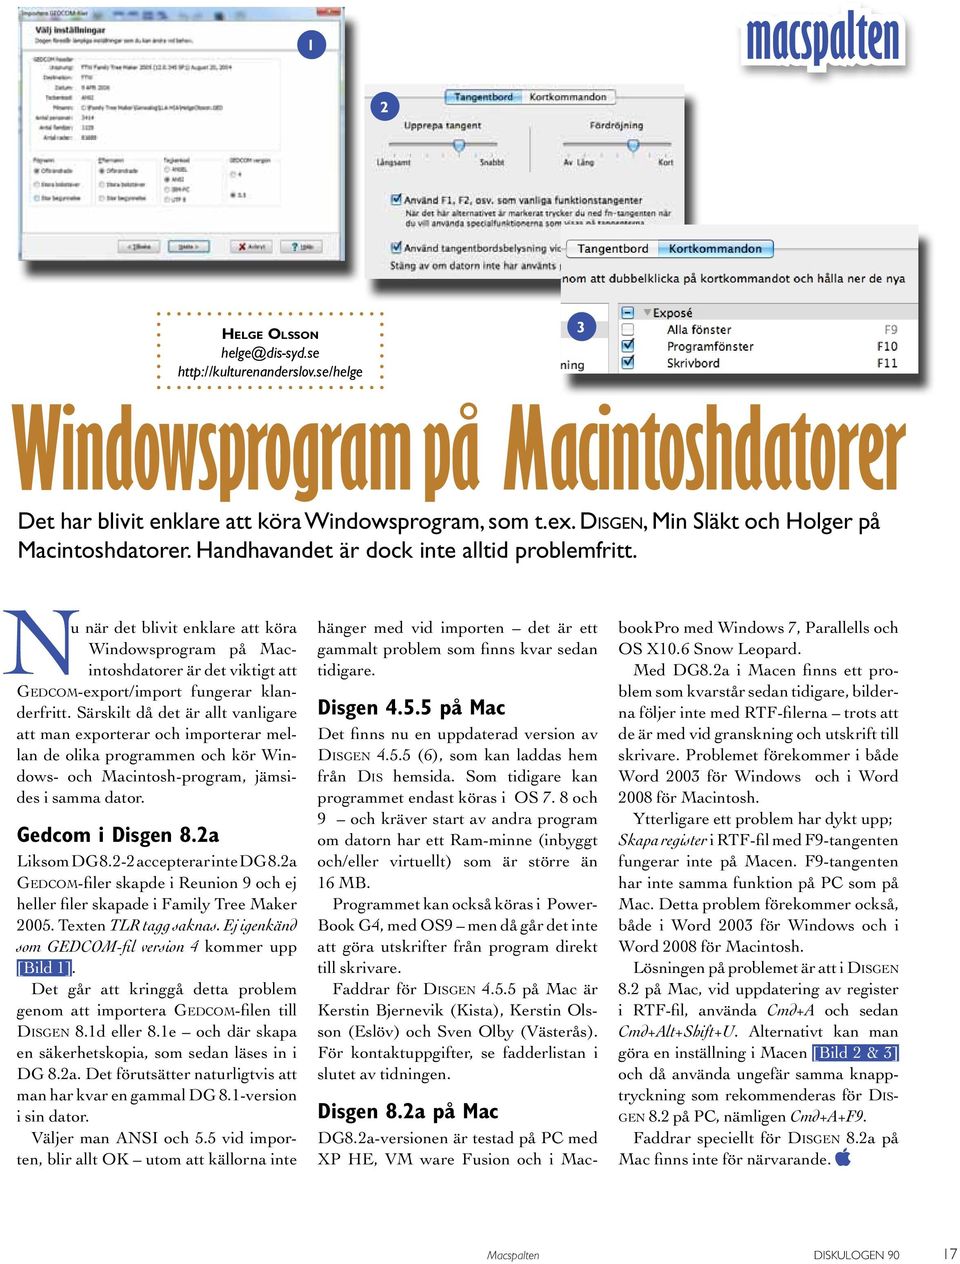 Nu när det blivit enklare att köra Windowsprogram på Macintoshdatorer är det viktigt att Gedcom-export/ import fungerar klanderfritt.